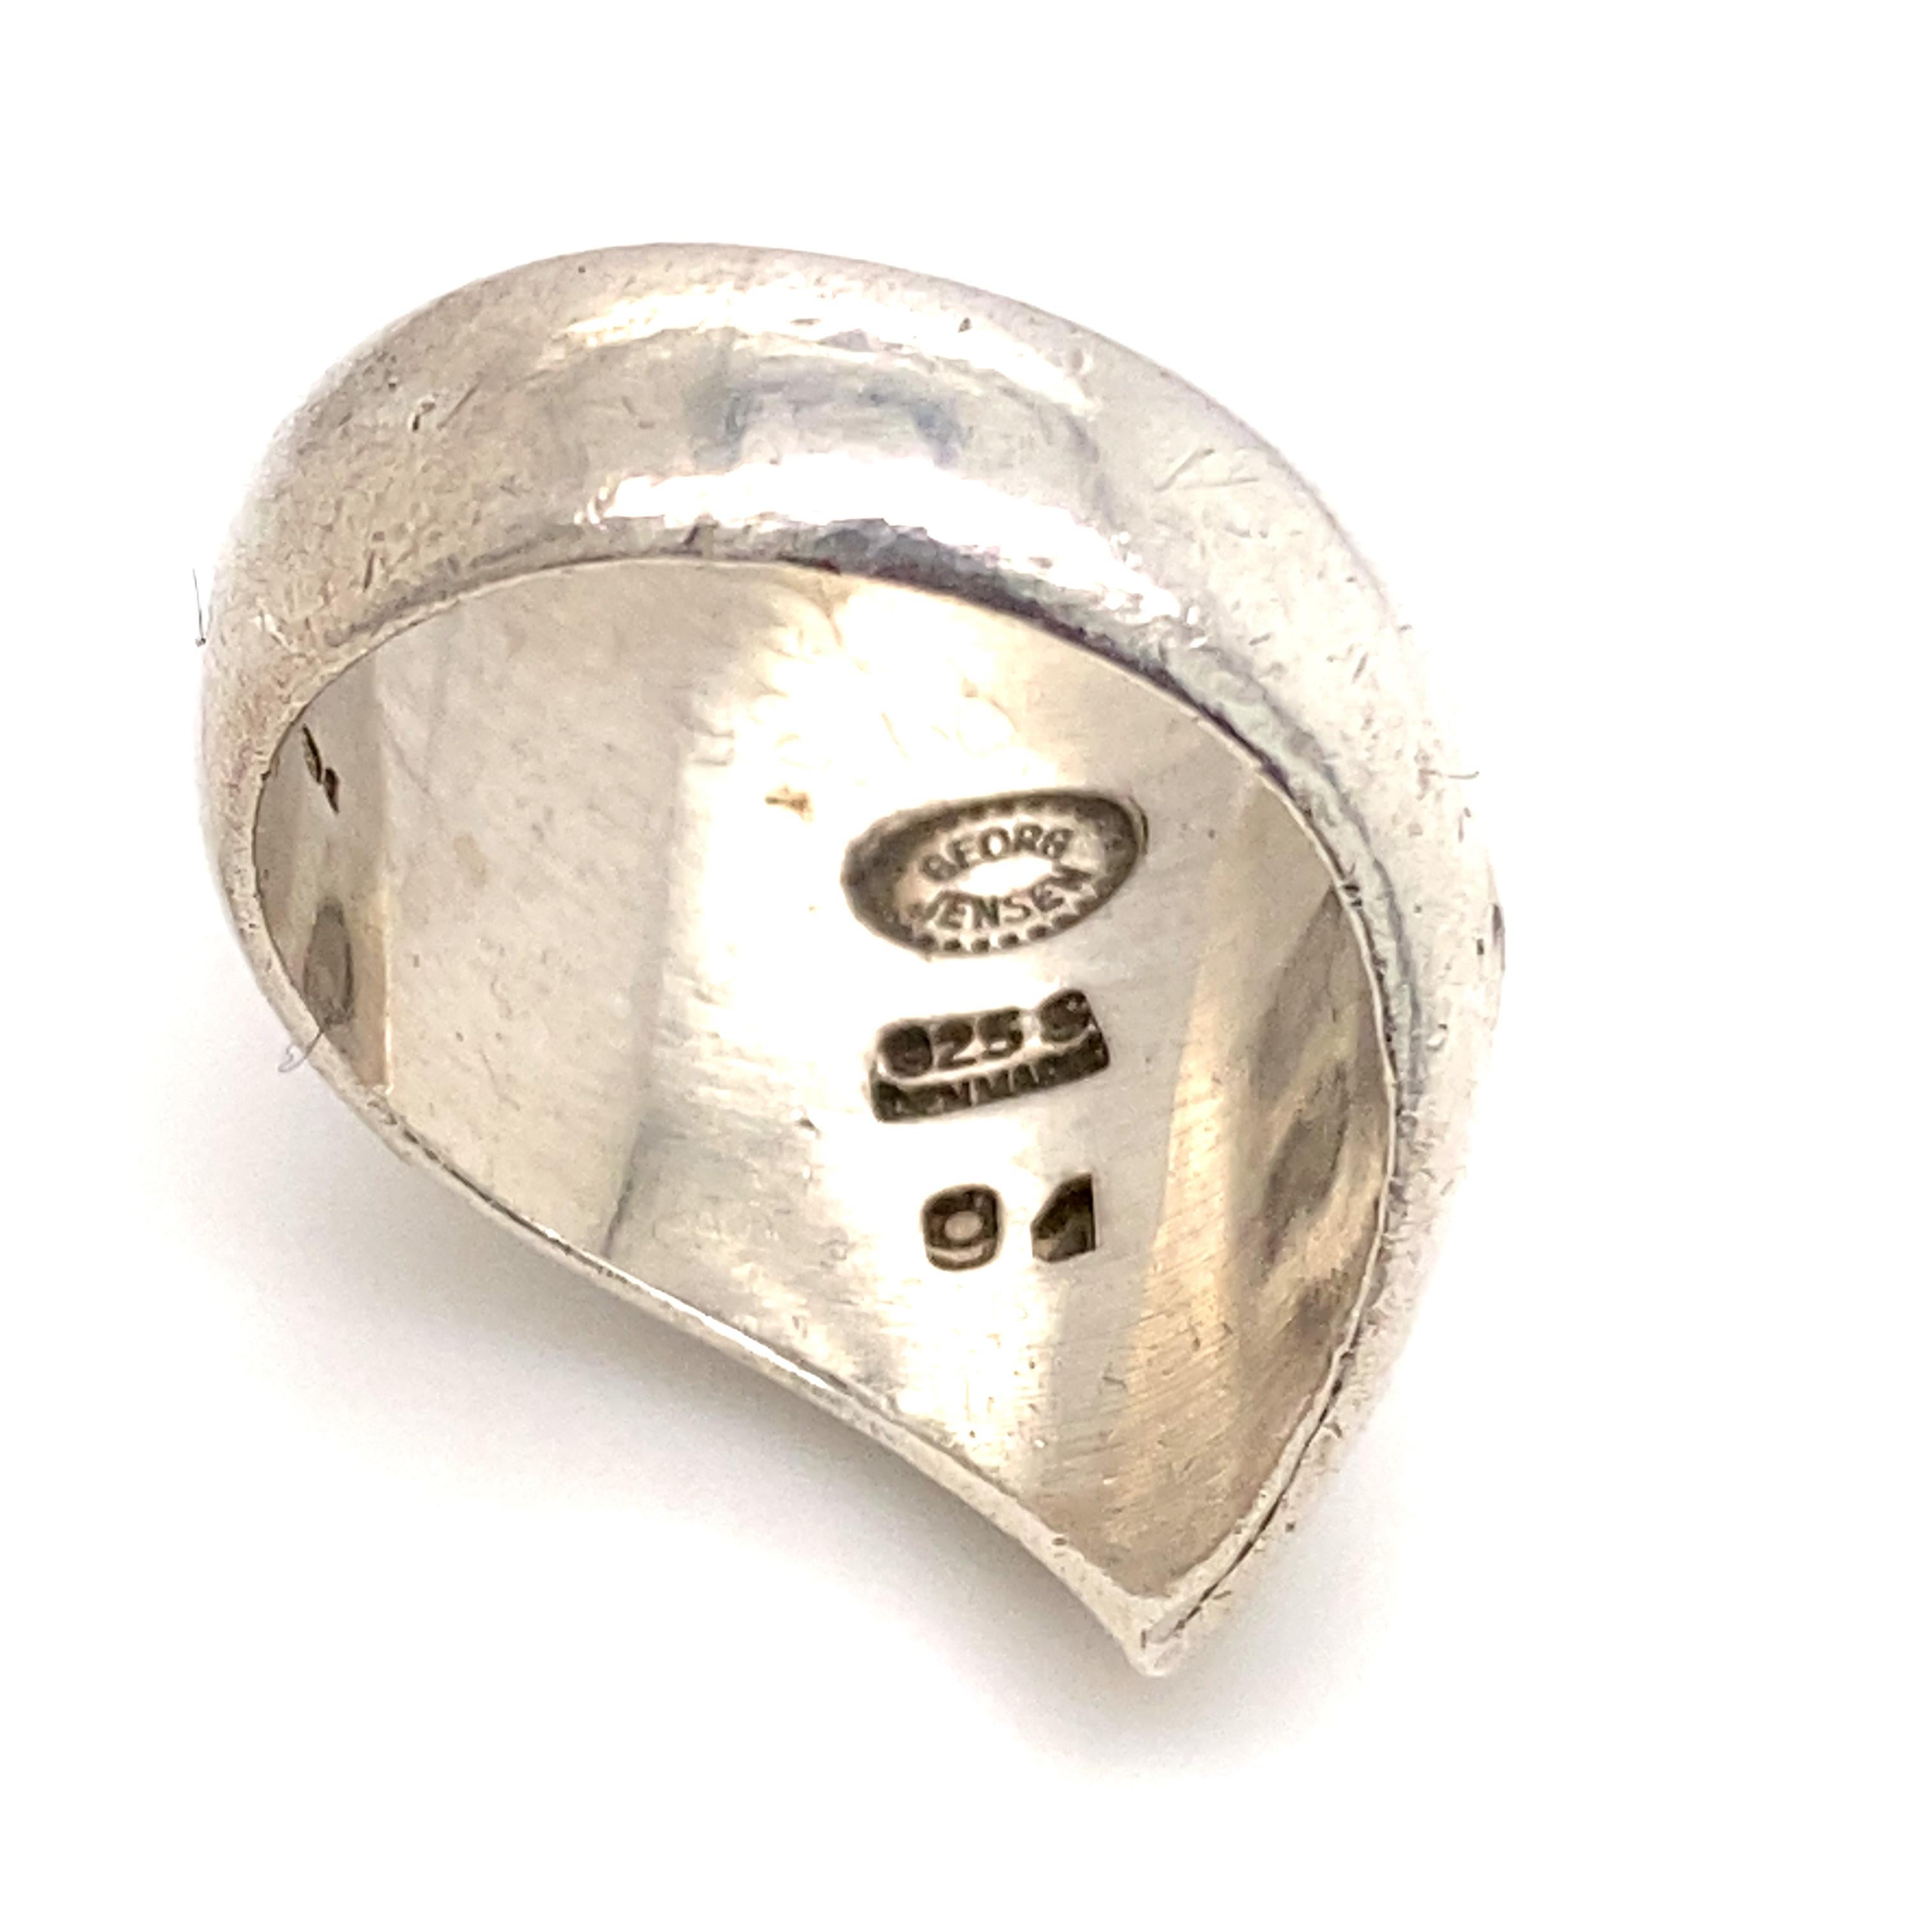 Silberring von Nanna Ditzel für Georg Jensen, Dänemark um 1968

Als elegante, geschwungene und wellenförmige Silberskulptur sitzt dieser Ring wunderschön am Finger und fängt das Licht ein, wenn man ihn aus verschiedenen Winkeln betrachtet.

Nanna